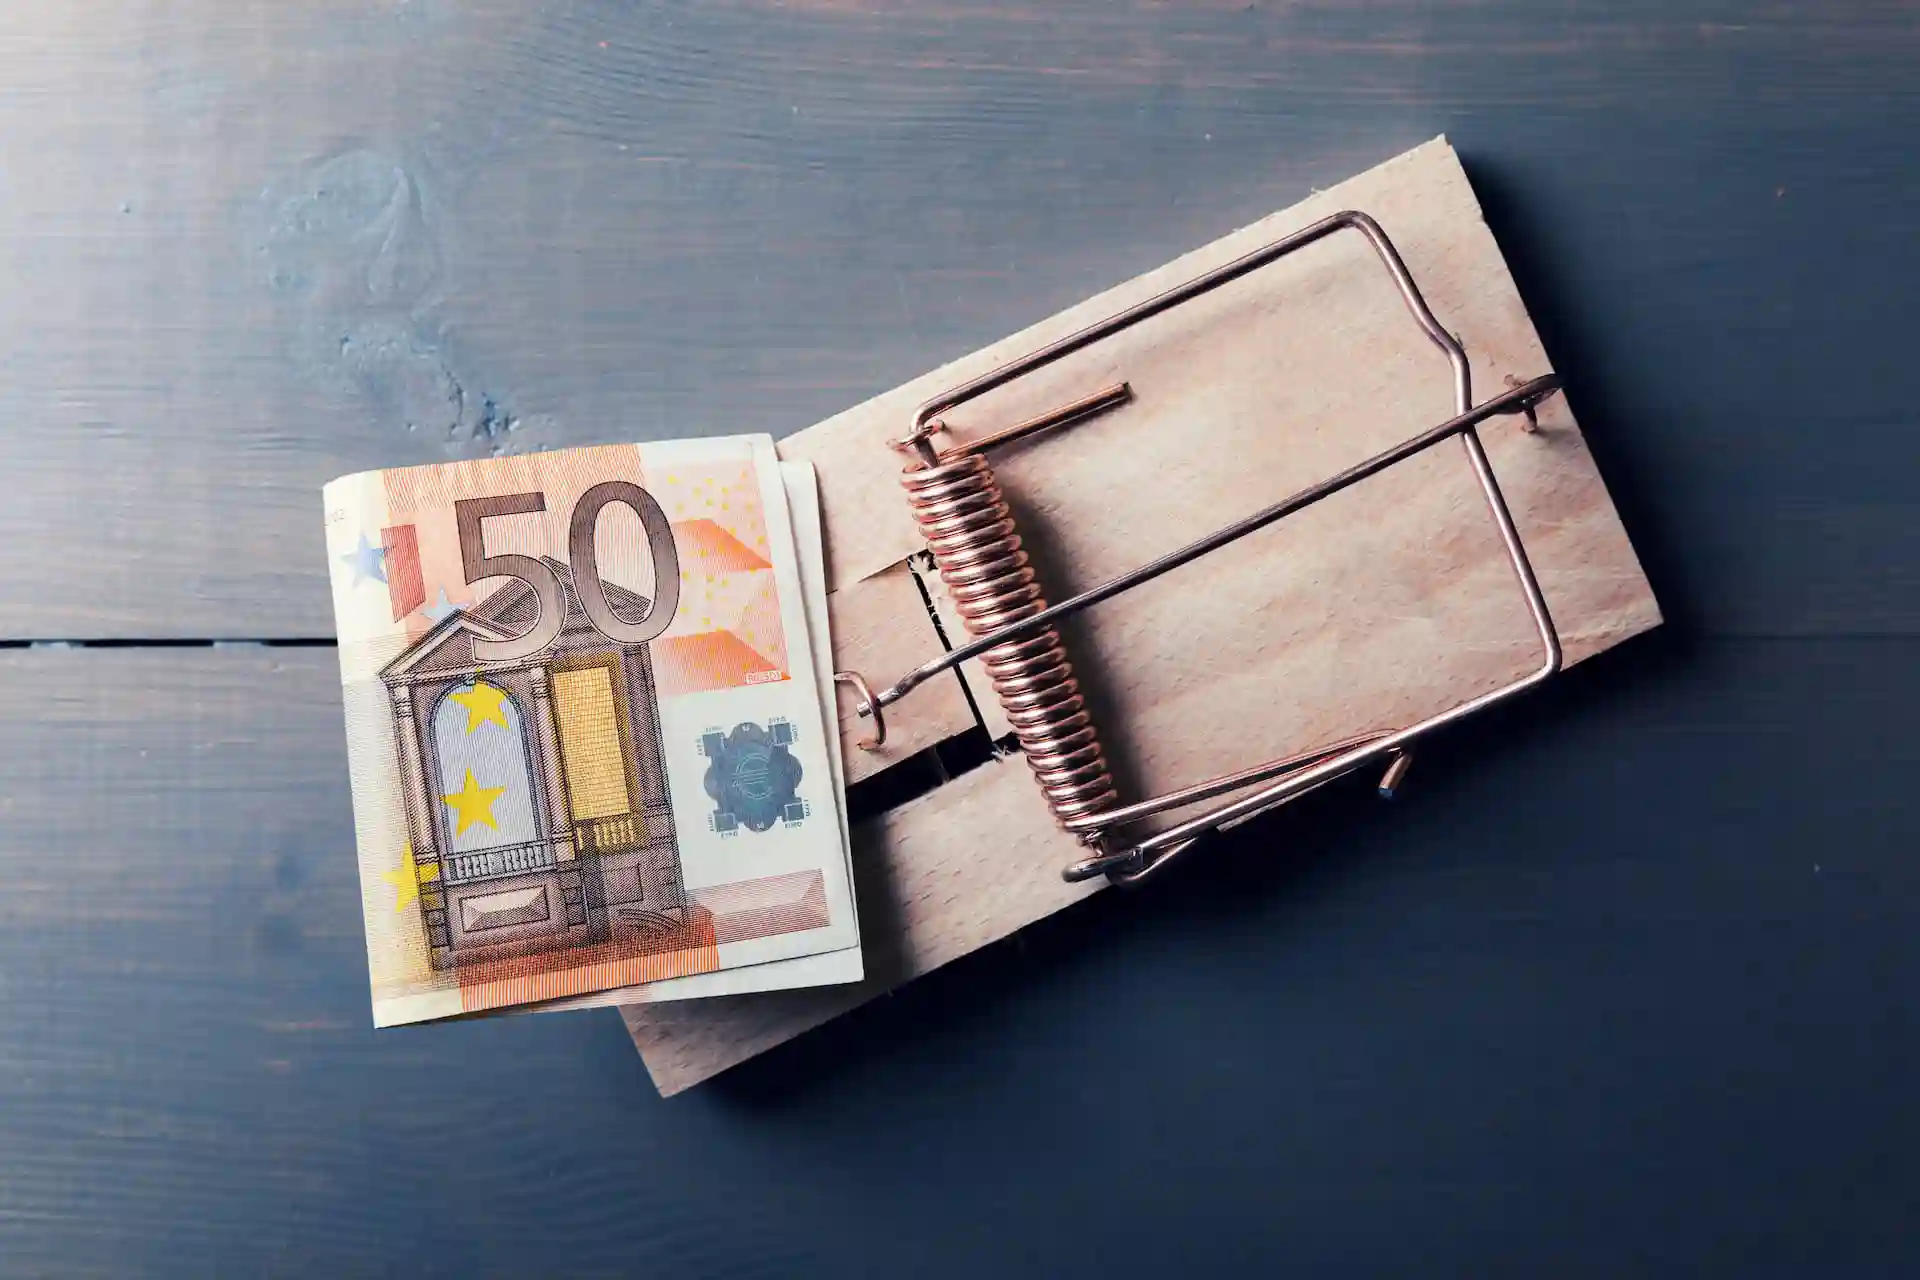 une liasse de billets de banque est posée sur un piège à souris, cette photographie symbolise les pièges et arnaque en rachat de credit